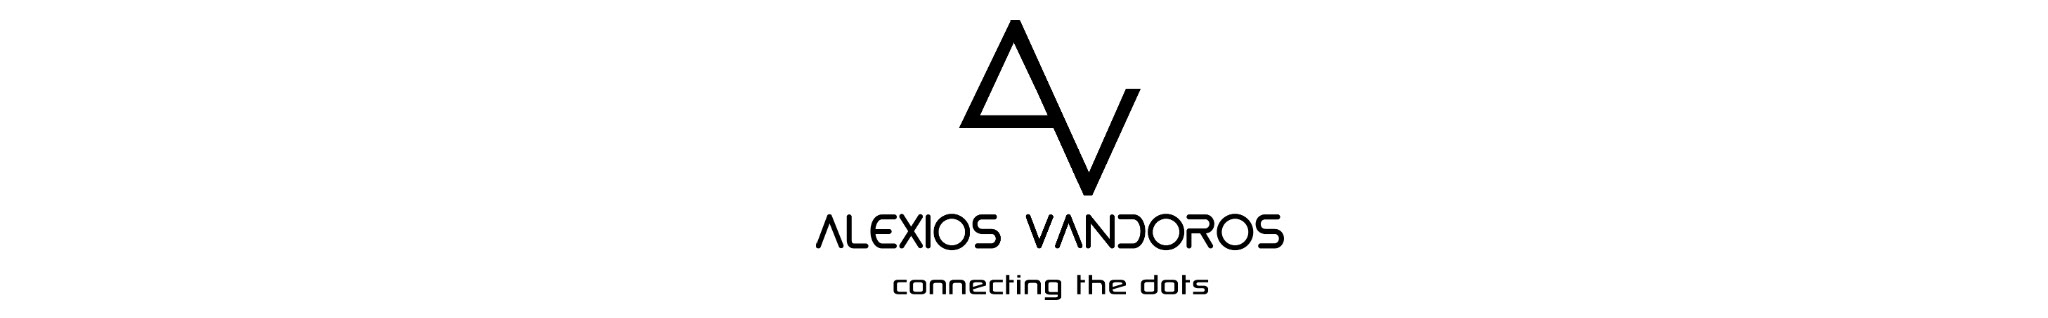 Alexios Vandoros's profile banner